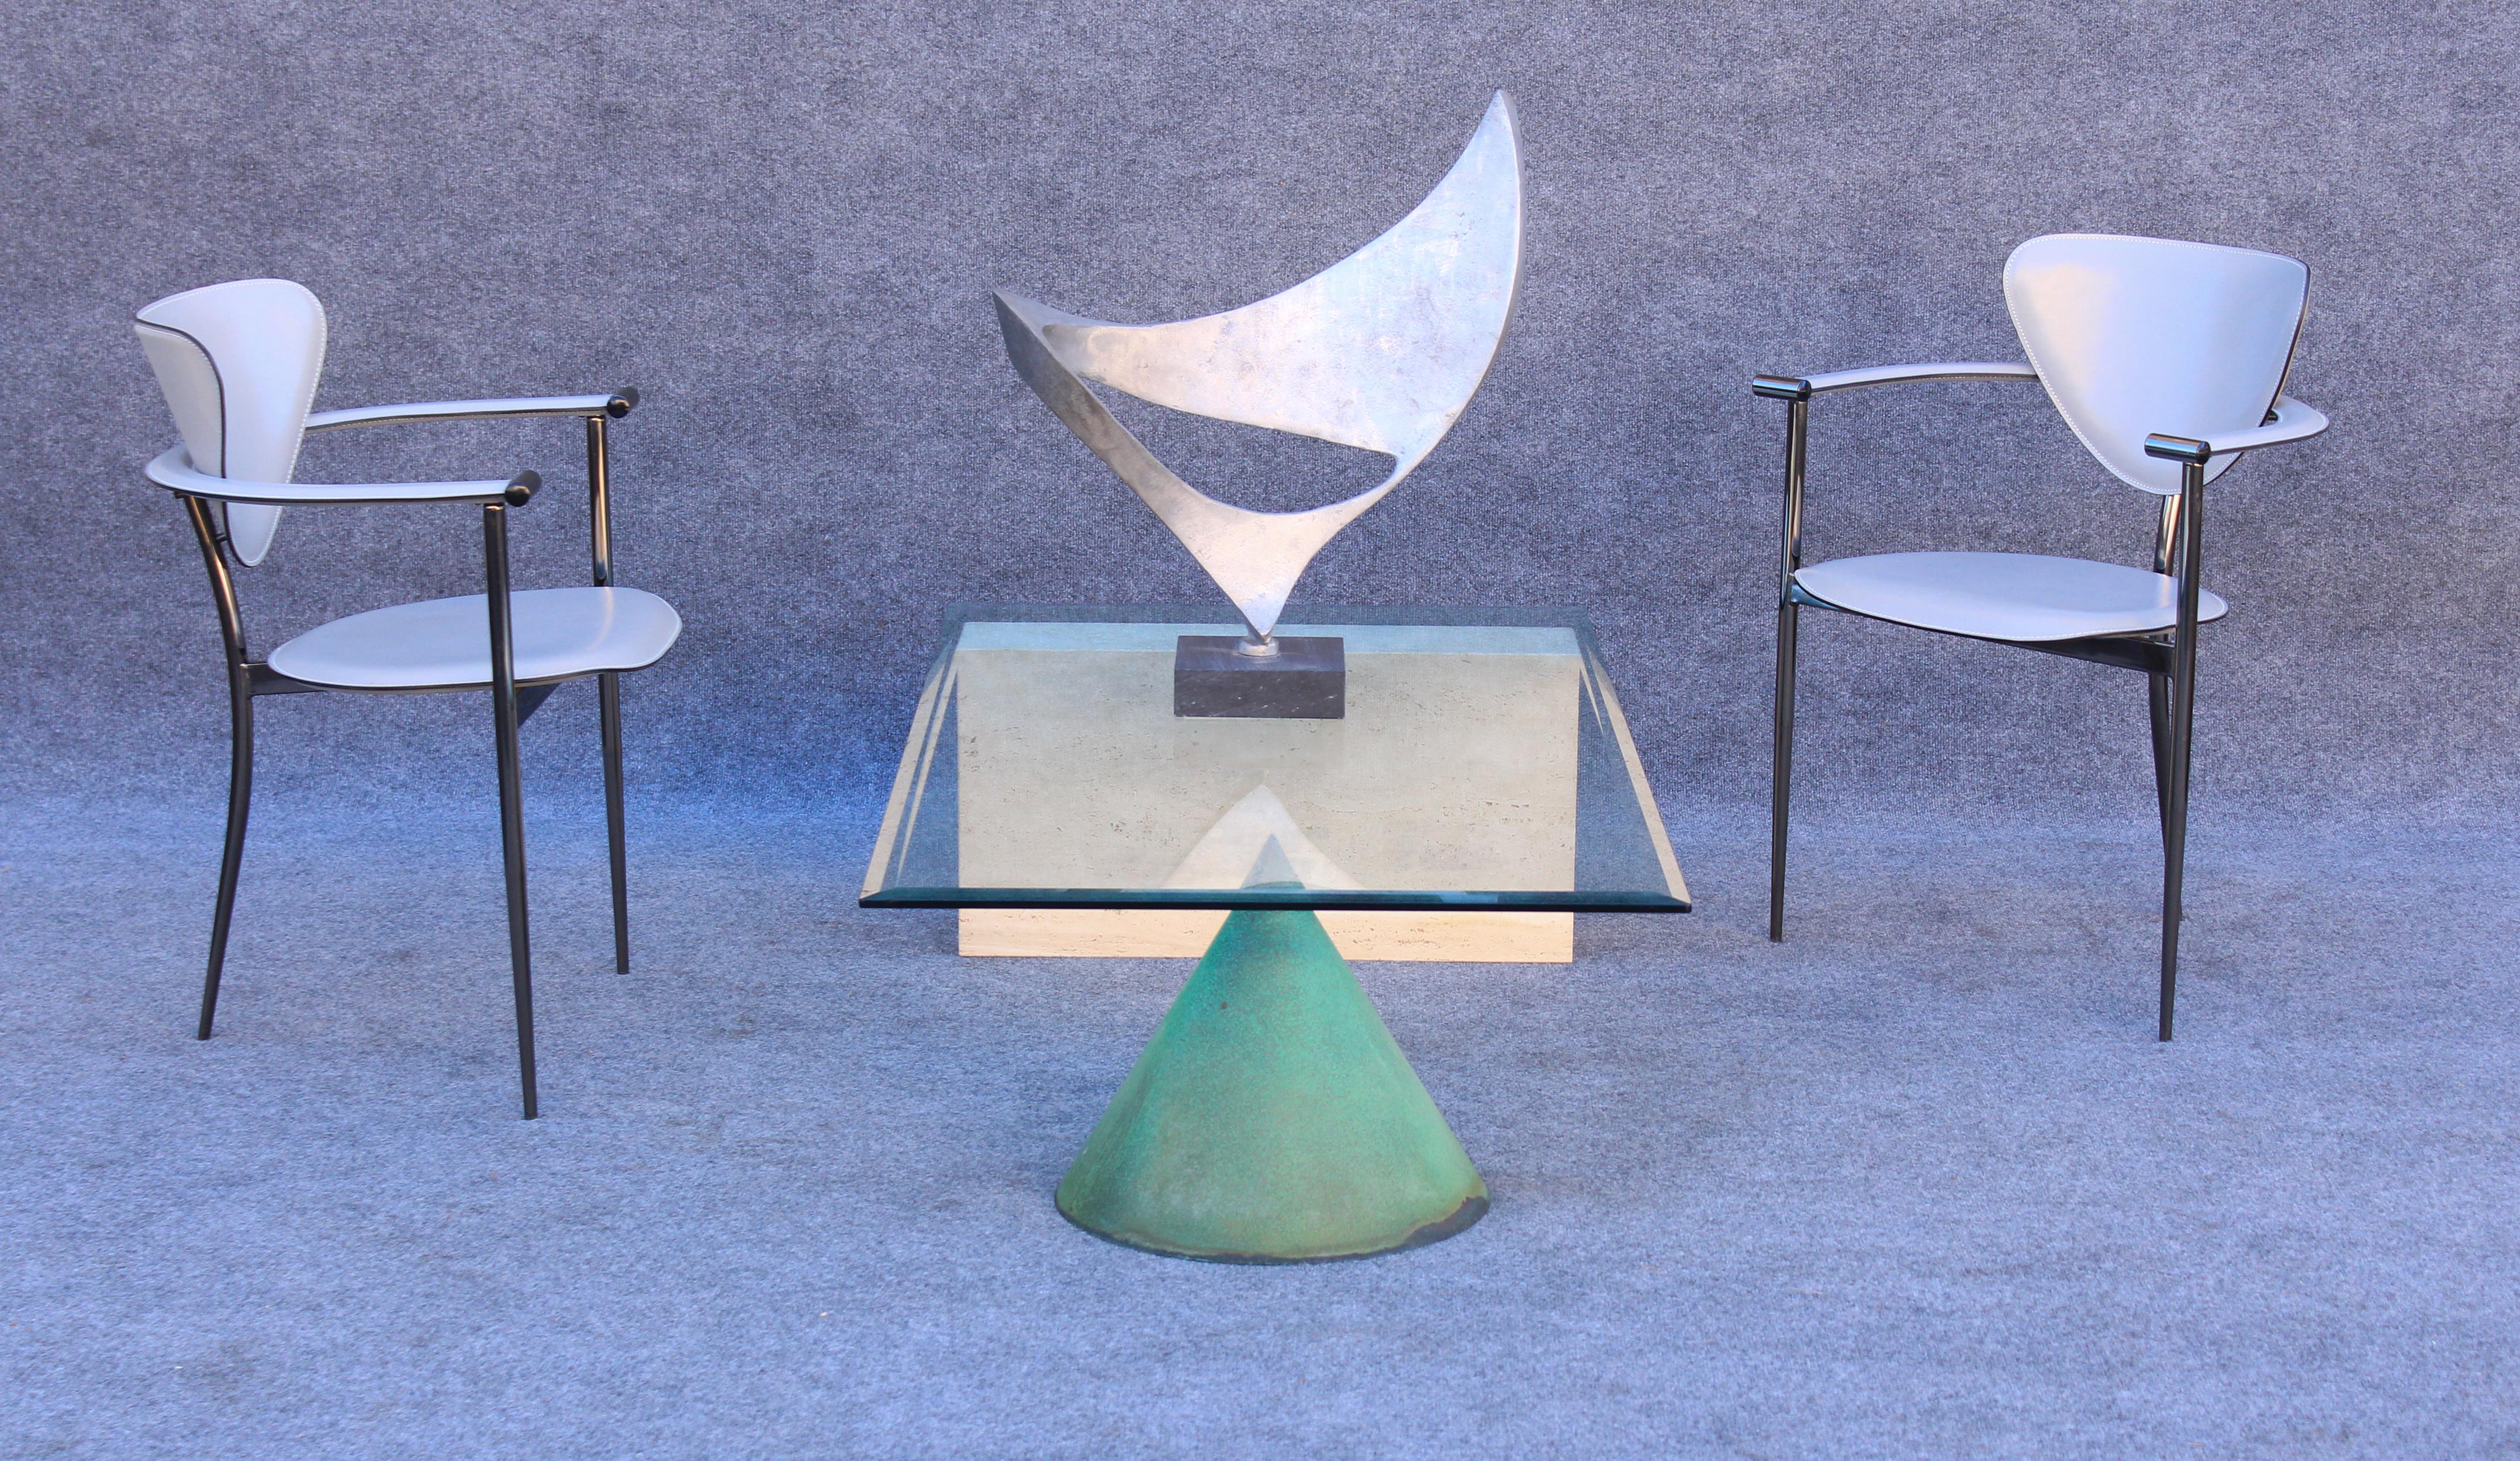 Dieser Tisch wurde von den italienischen Architekten Massimo & Lella Vignelli entworfen und in den 1970er Jahren von Casigliani hergestellt. Es gibt verschiedene Versionen dieses Tisches, aber dieses besondere Modell heißt 